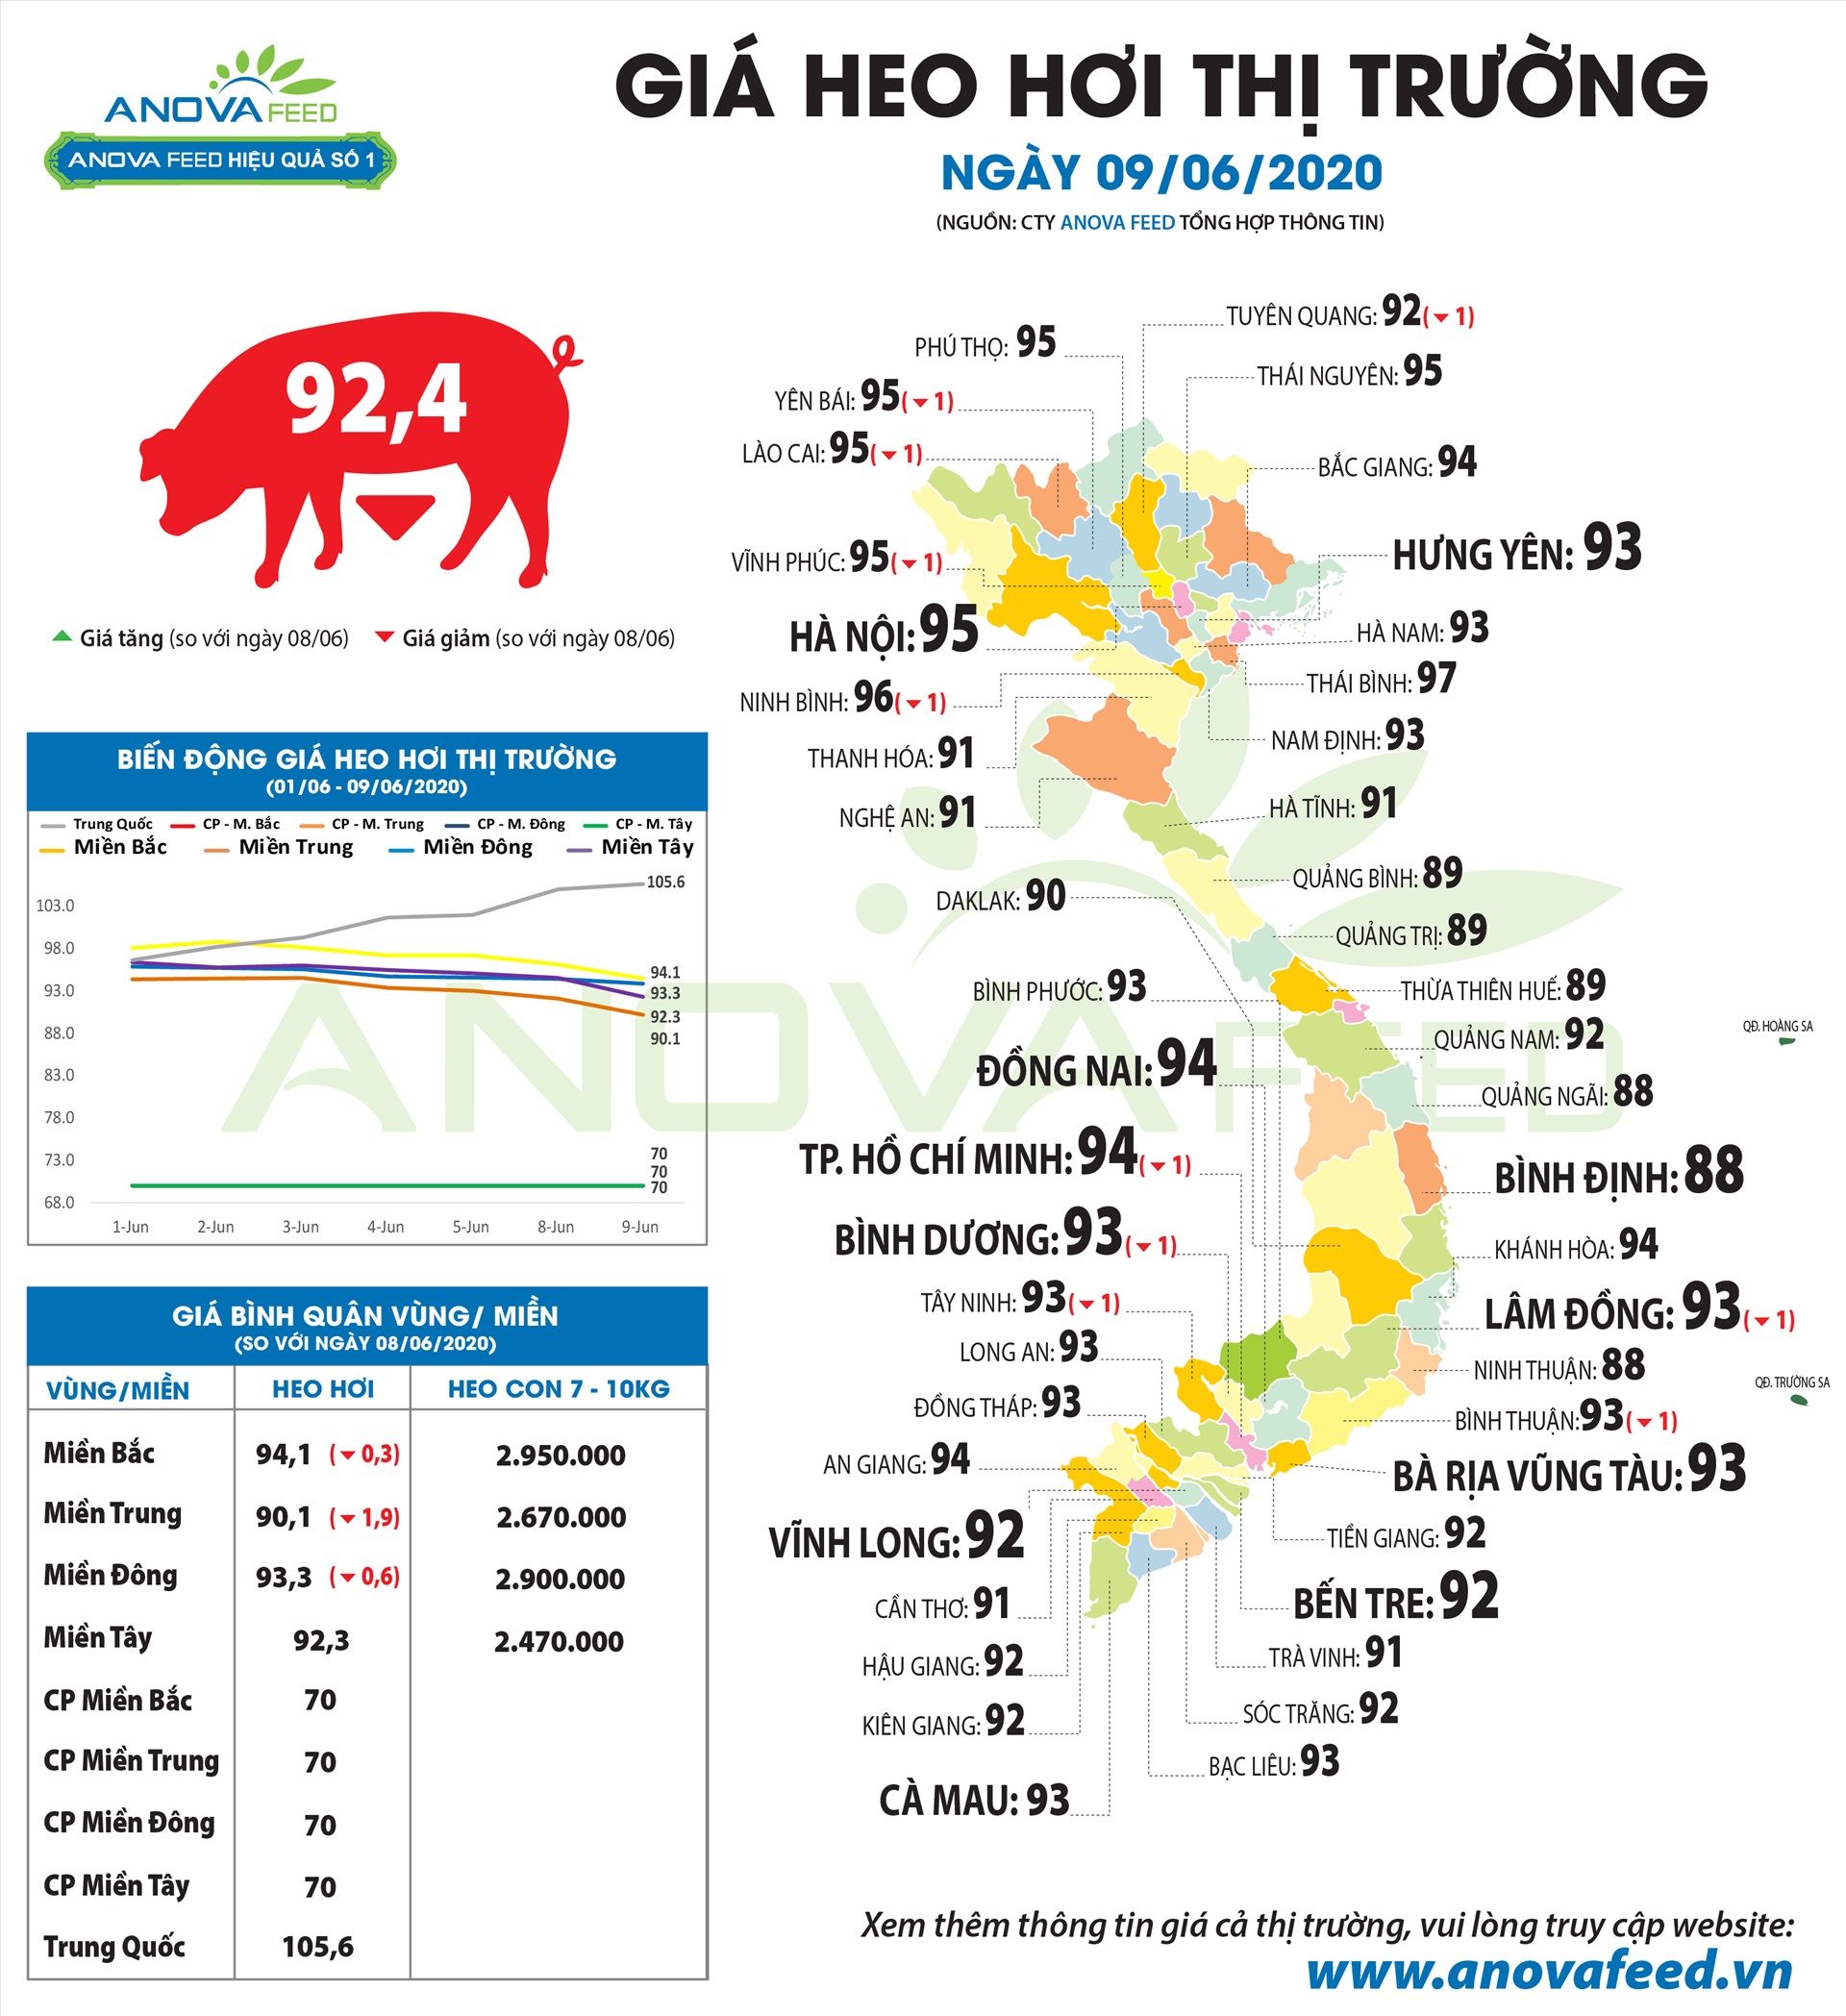 Giá lợn hơi tại các tỉnh ngày 9.6. Nguồn: Anova Feed